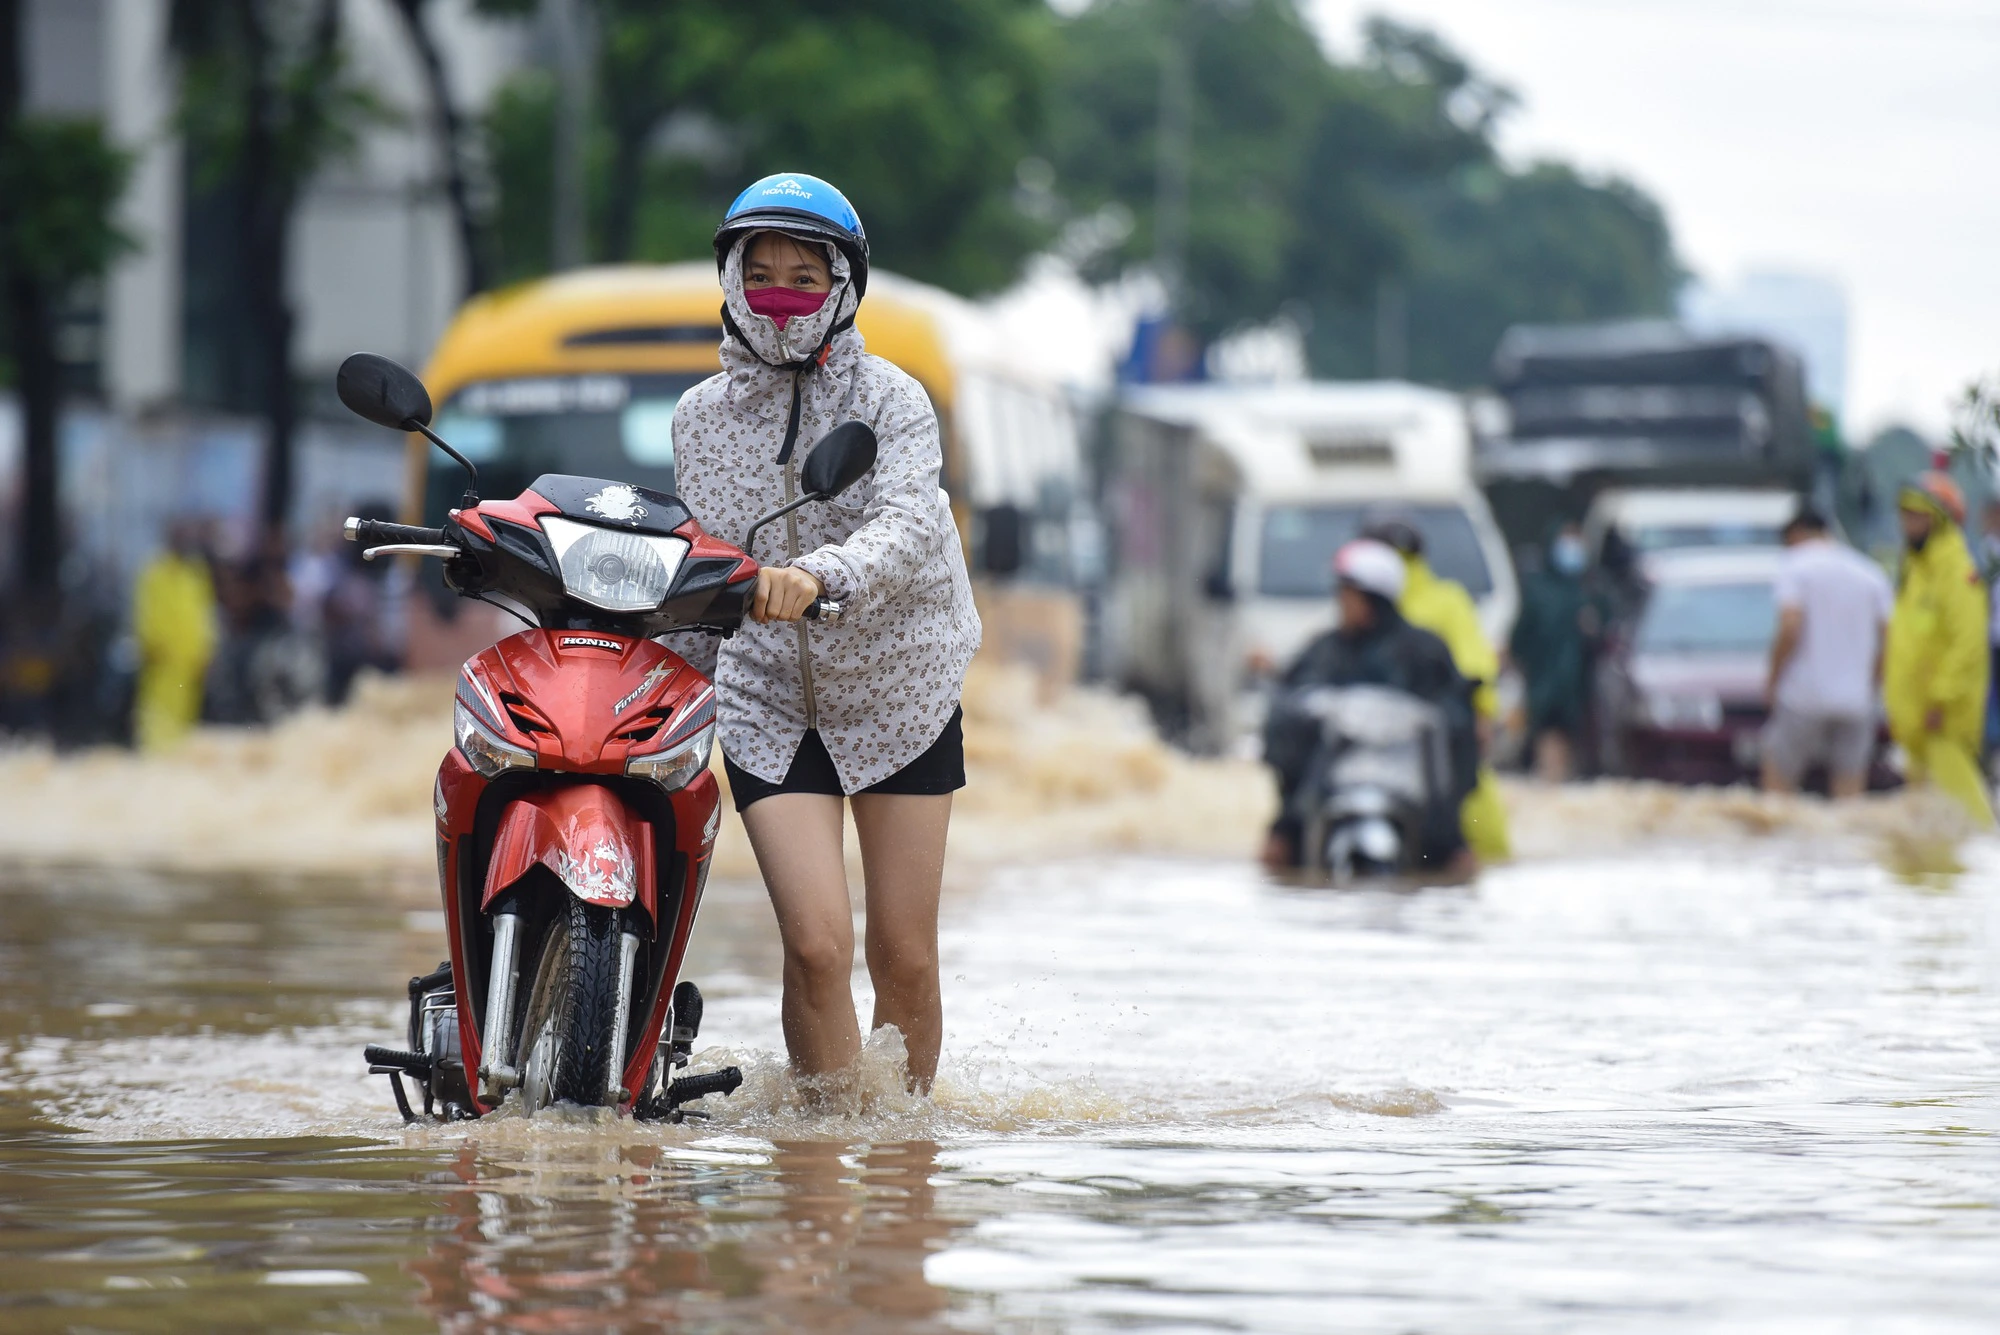 Đường gom đại lộ Thăng Long chìm trong biển nước sau trận mưa lớn - Ảnh 12.